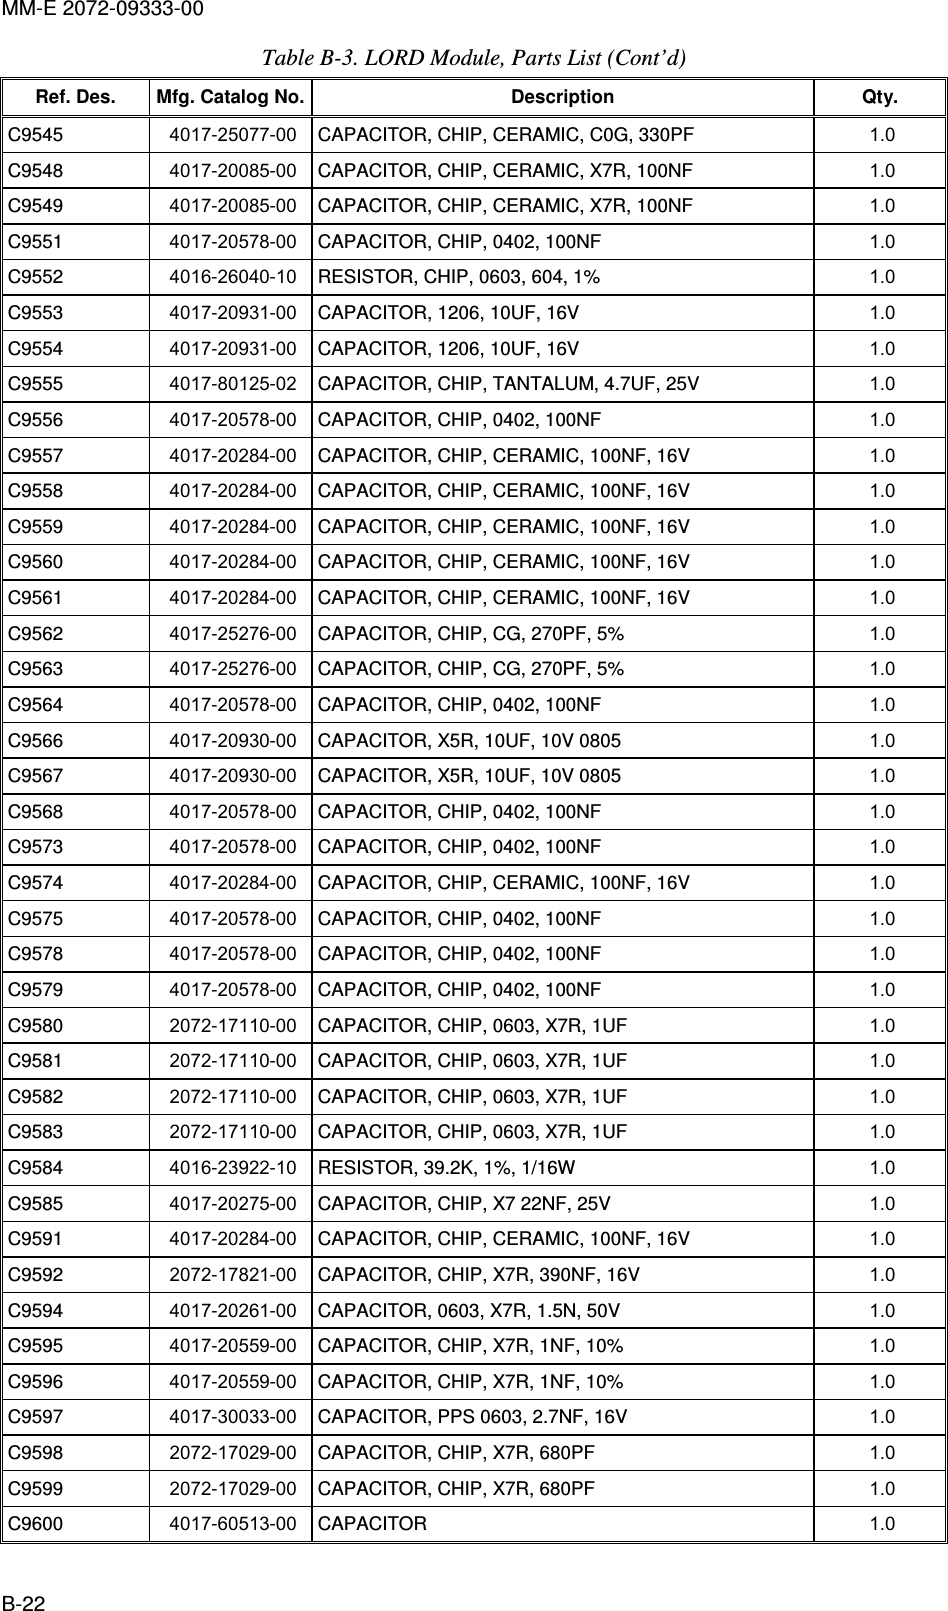 MM-E 2072-09333-00 B-22 Table  B-3. LORD Module, Parts List (Cont’d) Ref. Des.  Mfg. Catalog No. Description  Qty. C9545   4017-25077-00  CAPACITOR, CHIP, CERAMIC, C0G, 330PF  1.0   C9548   4017-20085-00  CAPACITOR, CHIP, CERAMIC, X7R, 100NF  1.0   C9549   4017-20085-00  CAPACITOR, CHIP, CERAMIC, X7R, 100NF  1.0   C9551   4017-20578-00  CAPACITOR, CHIP, 0402, 100NF  1.0   C9552   4016-26040-10  RESISTOR, CHIP, 0603, 604, 1%  1.0   C9553   4017-20931-00  CAPACITOR, 1206, 10UF, 16V  1.0   C9554   4017-20931-00  CAPACITOR, 1206, 10UF, 16V  1.0   C9555   4017-80125-02  CAPACITOR, CHIP, TANTALUM, 4.7UF, 25V  1.0   C9556   4017-20578-00  CAPACITOR, CHIP, 0402, 100NF  1.0   C9557   4017-20284-00  CAPACITOR, CHIP, CERAMIC, 100NF, 16V  1.0   C9558   4017-20284-00  CAPACITOR, CHIP, CERAMIC, 100NF, 16V  1.0   C9559   4017-20284-00  CAPACITOR, CHIP, CERAMIC, 100NF, 16V  1.0   C9560   4017-20284-00  CAPACITOR, CHIP, CERAMIC, 100NF, 16V  1.0   C9561   4017-20284-00  CAPACITOR, CHIP, CERAMIC, 100NF, 16V  1.0   C9562   4017-25276-00  CAPACITOR, CHIP, CG, 270PF, 5%  1.0   C9563   4017-25276-00  CAPACITOR, CHIP, CG, 270PF, 5%  1.0   C9564   4017-20578-00  CAPACITOR, CHIP, 0402, 100NF  1.0   C9566   4017-20930-00  CAPACITOR, X5R, 10UF, 10V 0805  1.0   C9567   4017-20930-00  CAPACITOR, X5R, 10UF, 10V 0805  1.0   C9568   4017-20578-00  CAPACITOR, CHIP, 0402, 100NF  1.0   C9573   4017-20578-00  CAPACITOR, CHIP, 0402, 100NF  1.0   C9574   4017-20284-00  CAPACITOR, CHIP, CERAMIC, 100NF, 16V  1.0   C9575   4017-20578-00  CAPACITOR, CHIP, 0402, 100NF  1.0   C9578   4017-20578-00  CAPACITOR, CHIP, 0402, 100NF  1.0   C9579   4017-20578-00  CAPACITOR, CHIP, 0402, 100NF  1.0   C9580   2072-17110-00  CAPACITOR, CHIP, 0603, X7R, 1UF  1.0   C9581   2072-17110-00  CAPACITOR, CHIP, 0603, X7R, 1UF  1.0   C9582   2072-17110-00  CAPACITOR, CHIP, 0603, X7R, 1UF  1.0   C9583   2072-17110-00  CAPACITOR, CHIP, 0603, X7R, 1UF  1.0   C9584   4016-23922-10  RESISTOR, 39.2K, 1%, 1/16W  1.0   C9585   4017-20275-00  CAPACITOR, CHIP, X7 22NF, 25V  1.0   C9591   4017-20284-00  CAPACITOR, CHIP, CERAMIC, 100NF, 16V  1.0   C9592   2072-17821-00  CAPACITOR, CHIP, X7R, 390NF, 16V  1.0   C9594   4017-20261-00  CAPACITOR, 0603, X7R, 1.5N, 50V  1.0   C9595   4017-20559-00  CAPACITOR, CHIP, X7R, 1NF, 10%  1.0   C9596   4017-20559-00  CAPACITOR, CHIP, X7R, 1NF, 10%  1.0   C9597   4017-30033-00  CAPACITOR, PPS 0603, 2.7NF, 16V  1.0   C9598   2072-17029-00  CAPACITOR, CHIP, X7R, 680PF  1.0   C9599   2072-17029-00  CAPACITOR, CHIP, X7R, 680PF  1.0   C9600   4017-60513-00  CAPACITOR  1.0   